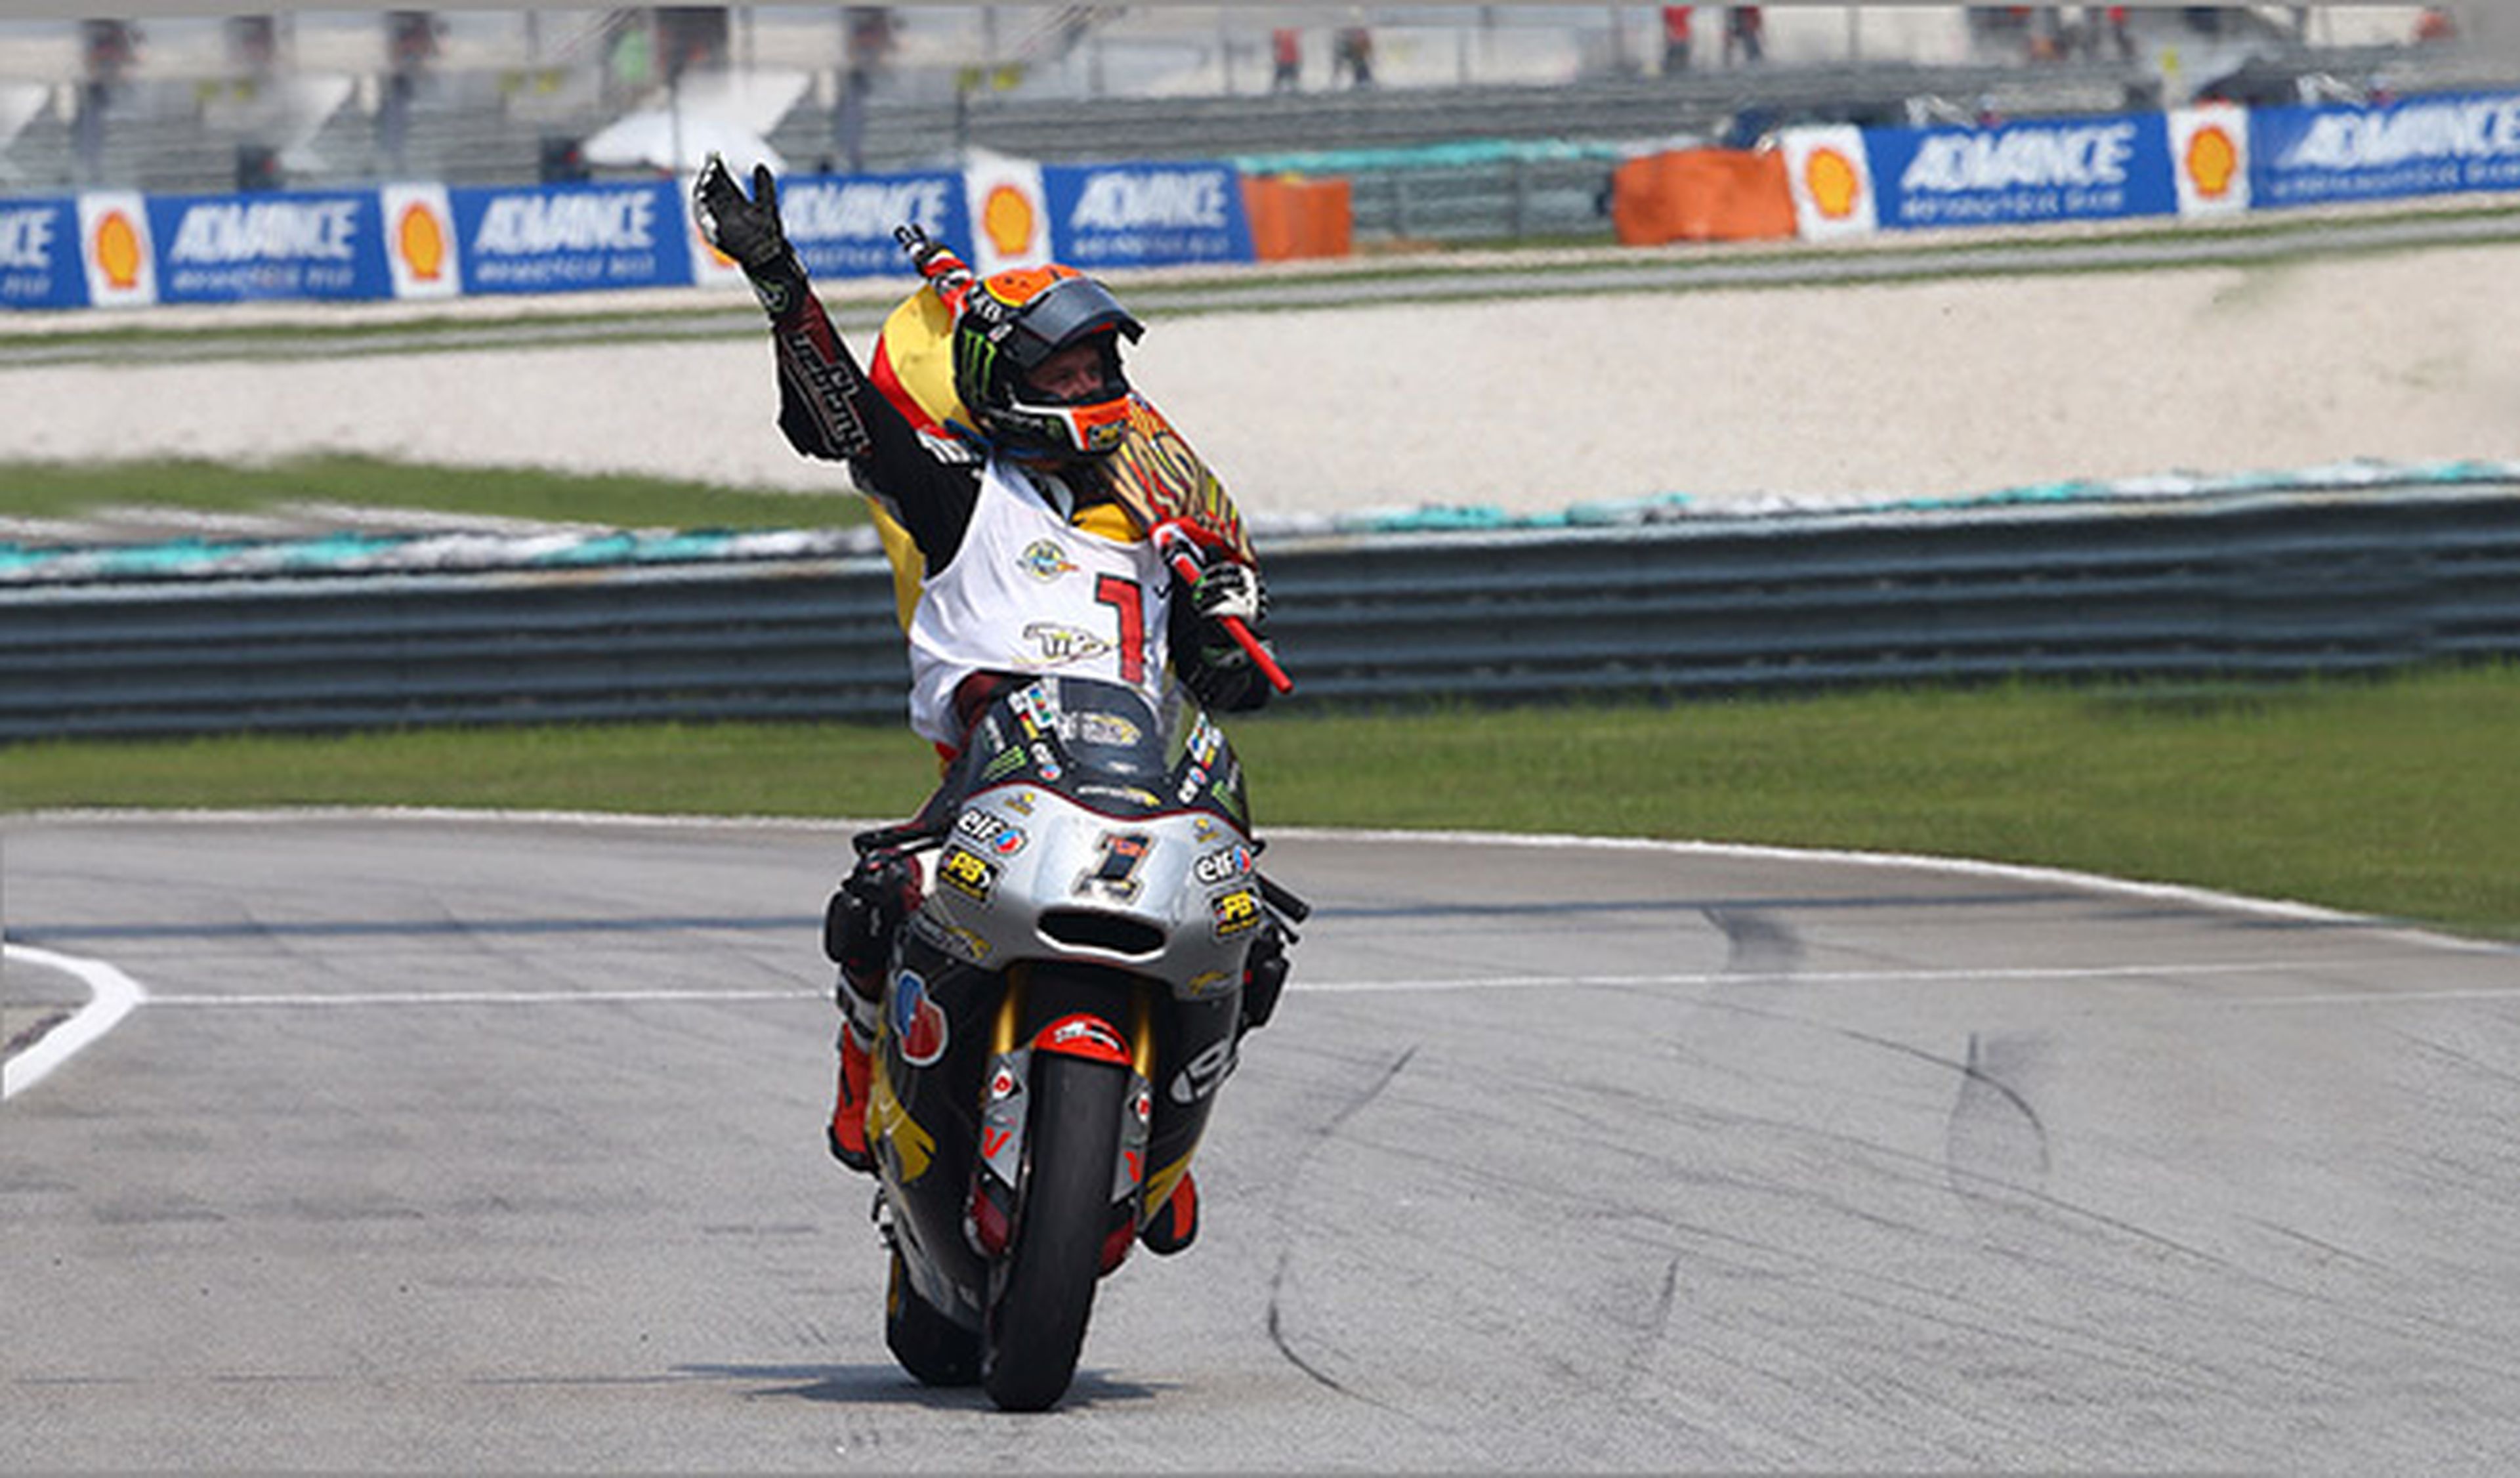 "El triunfo del trabajo" de Rabat, campeón del mundo Moto2